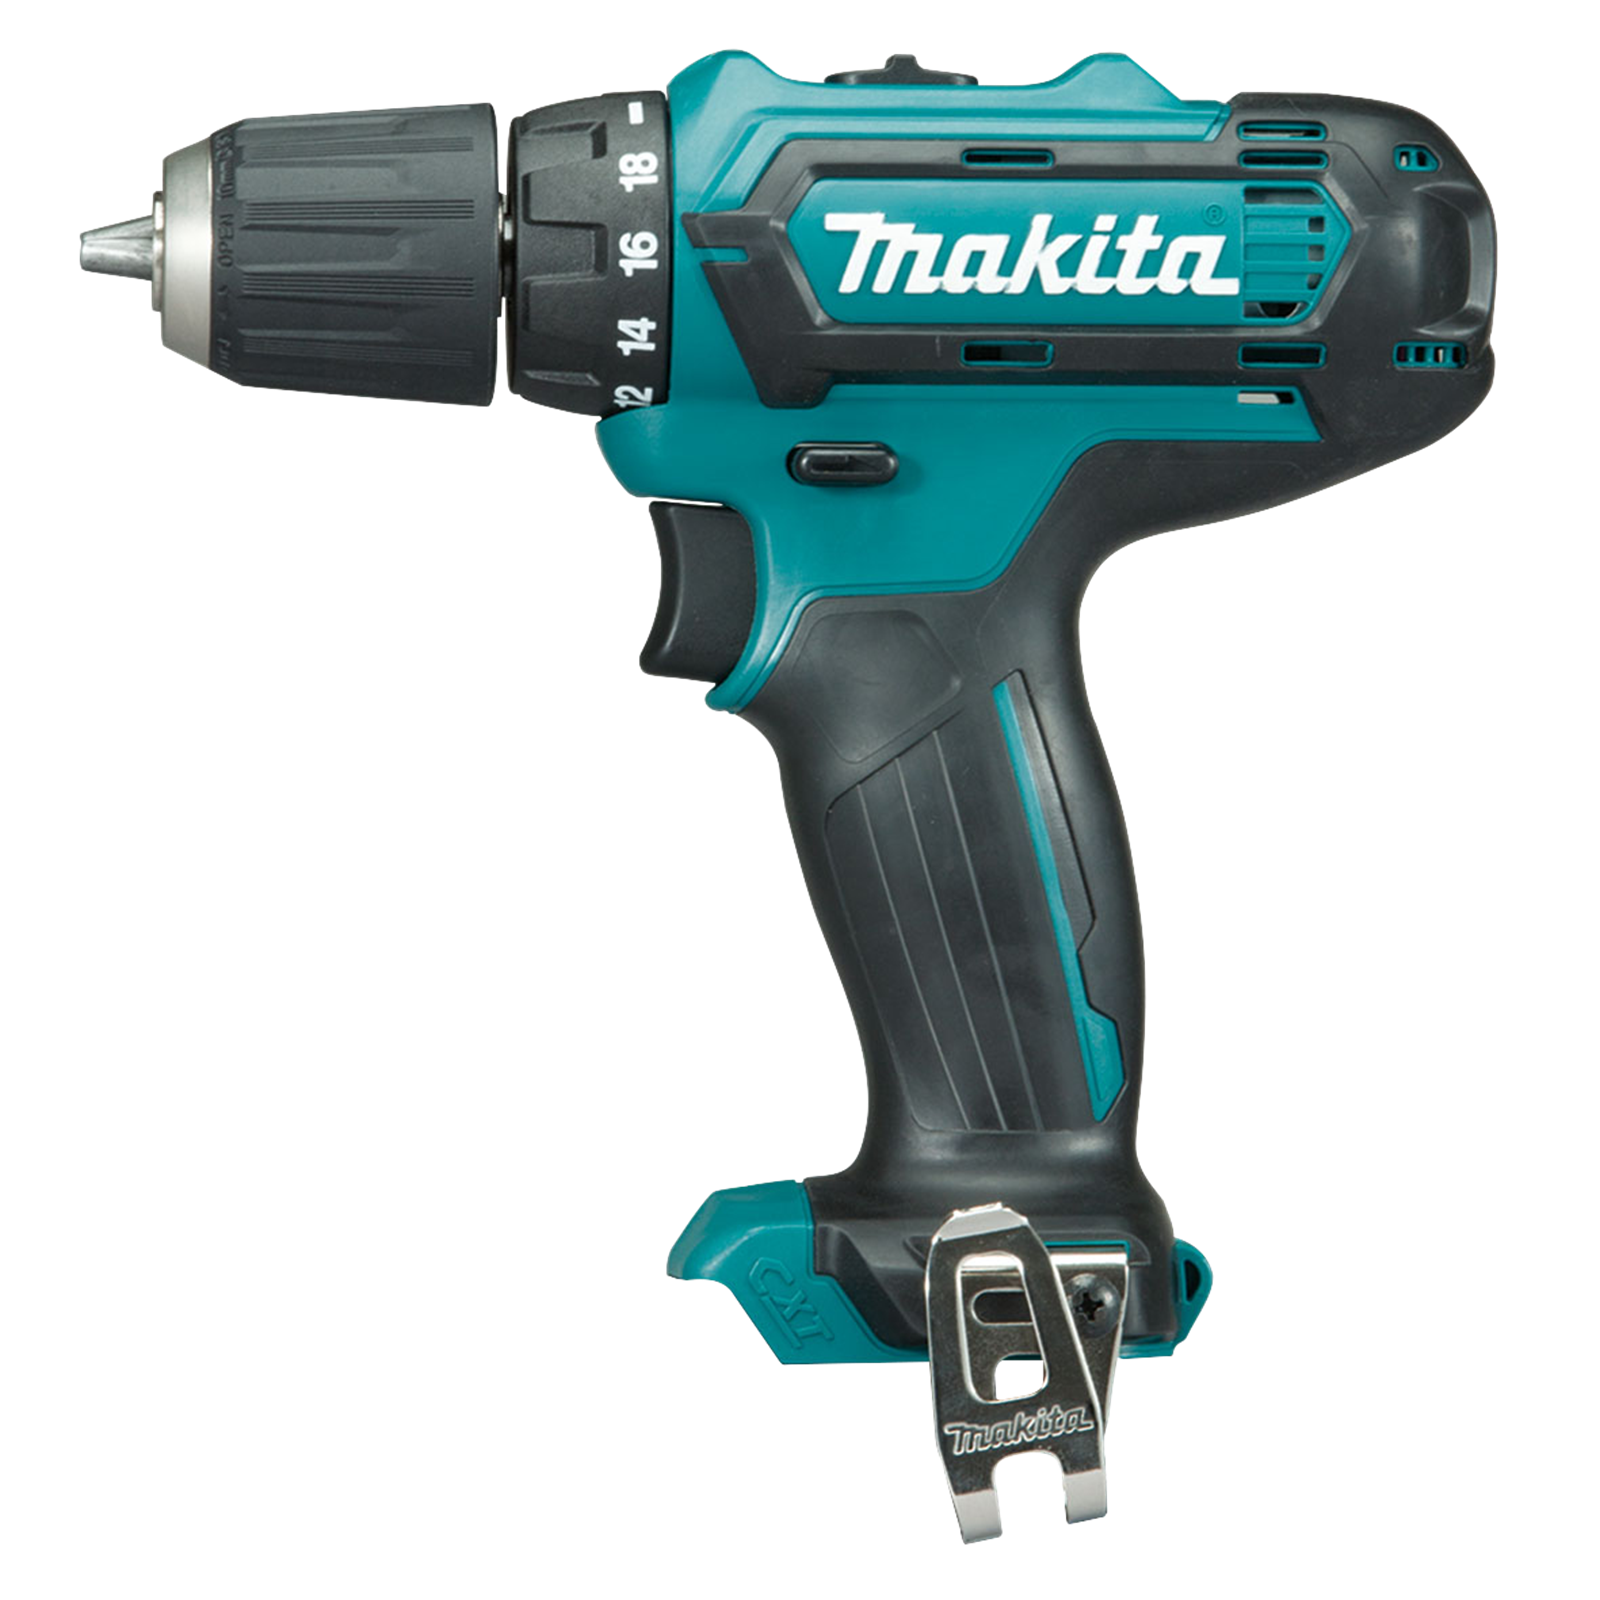 Makita 12V Max Cordless Drill Driver - Skin Only